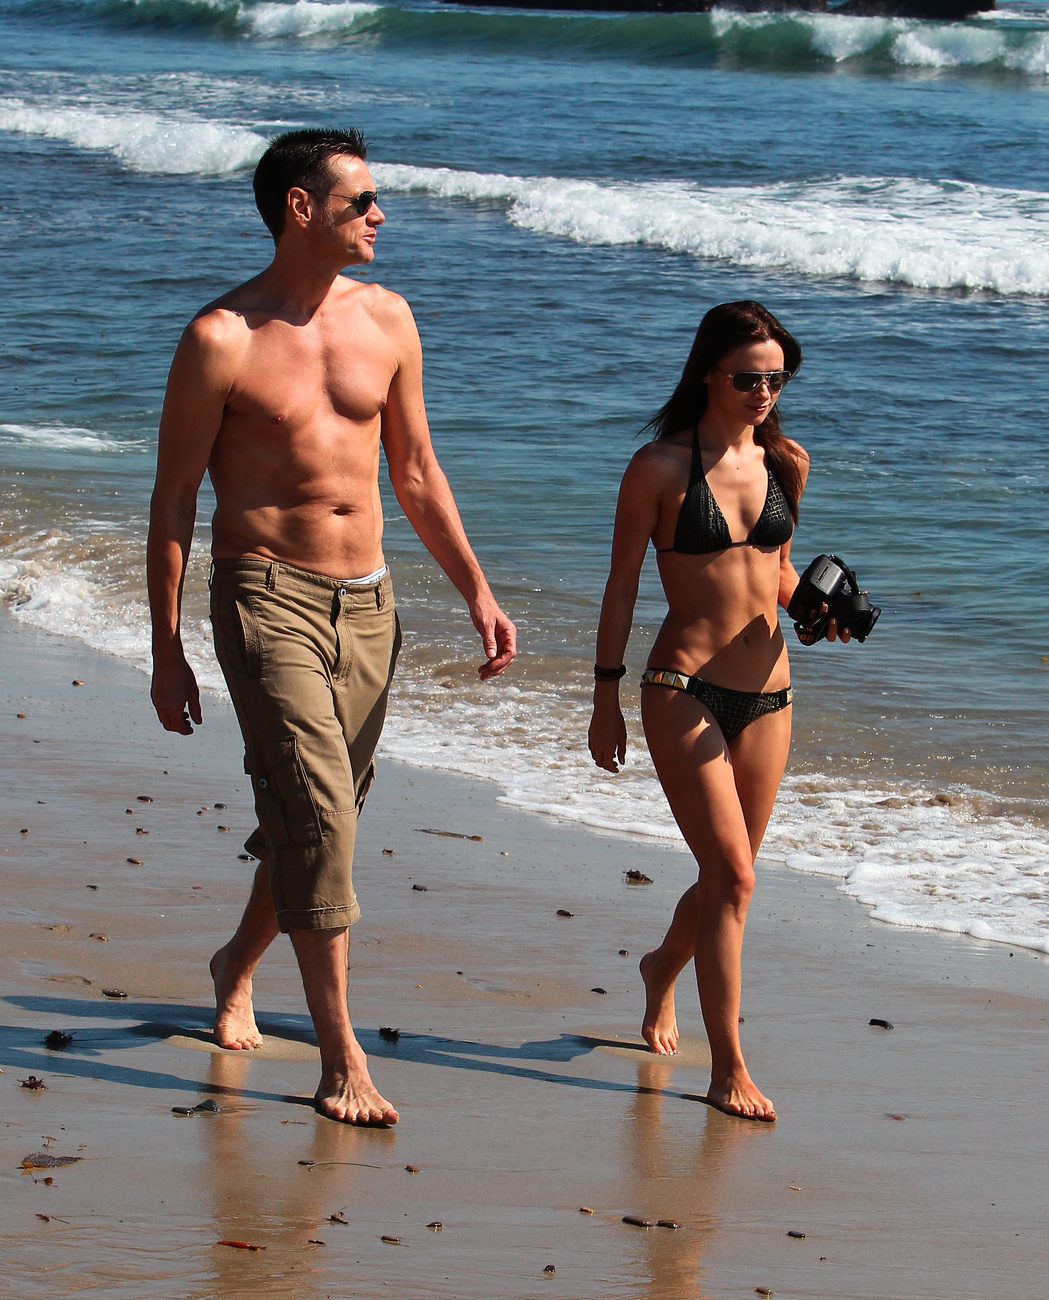 Jim Carrey a strandon Malibuban